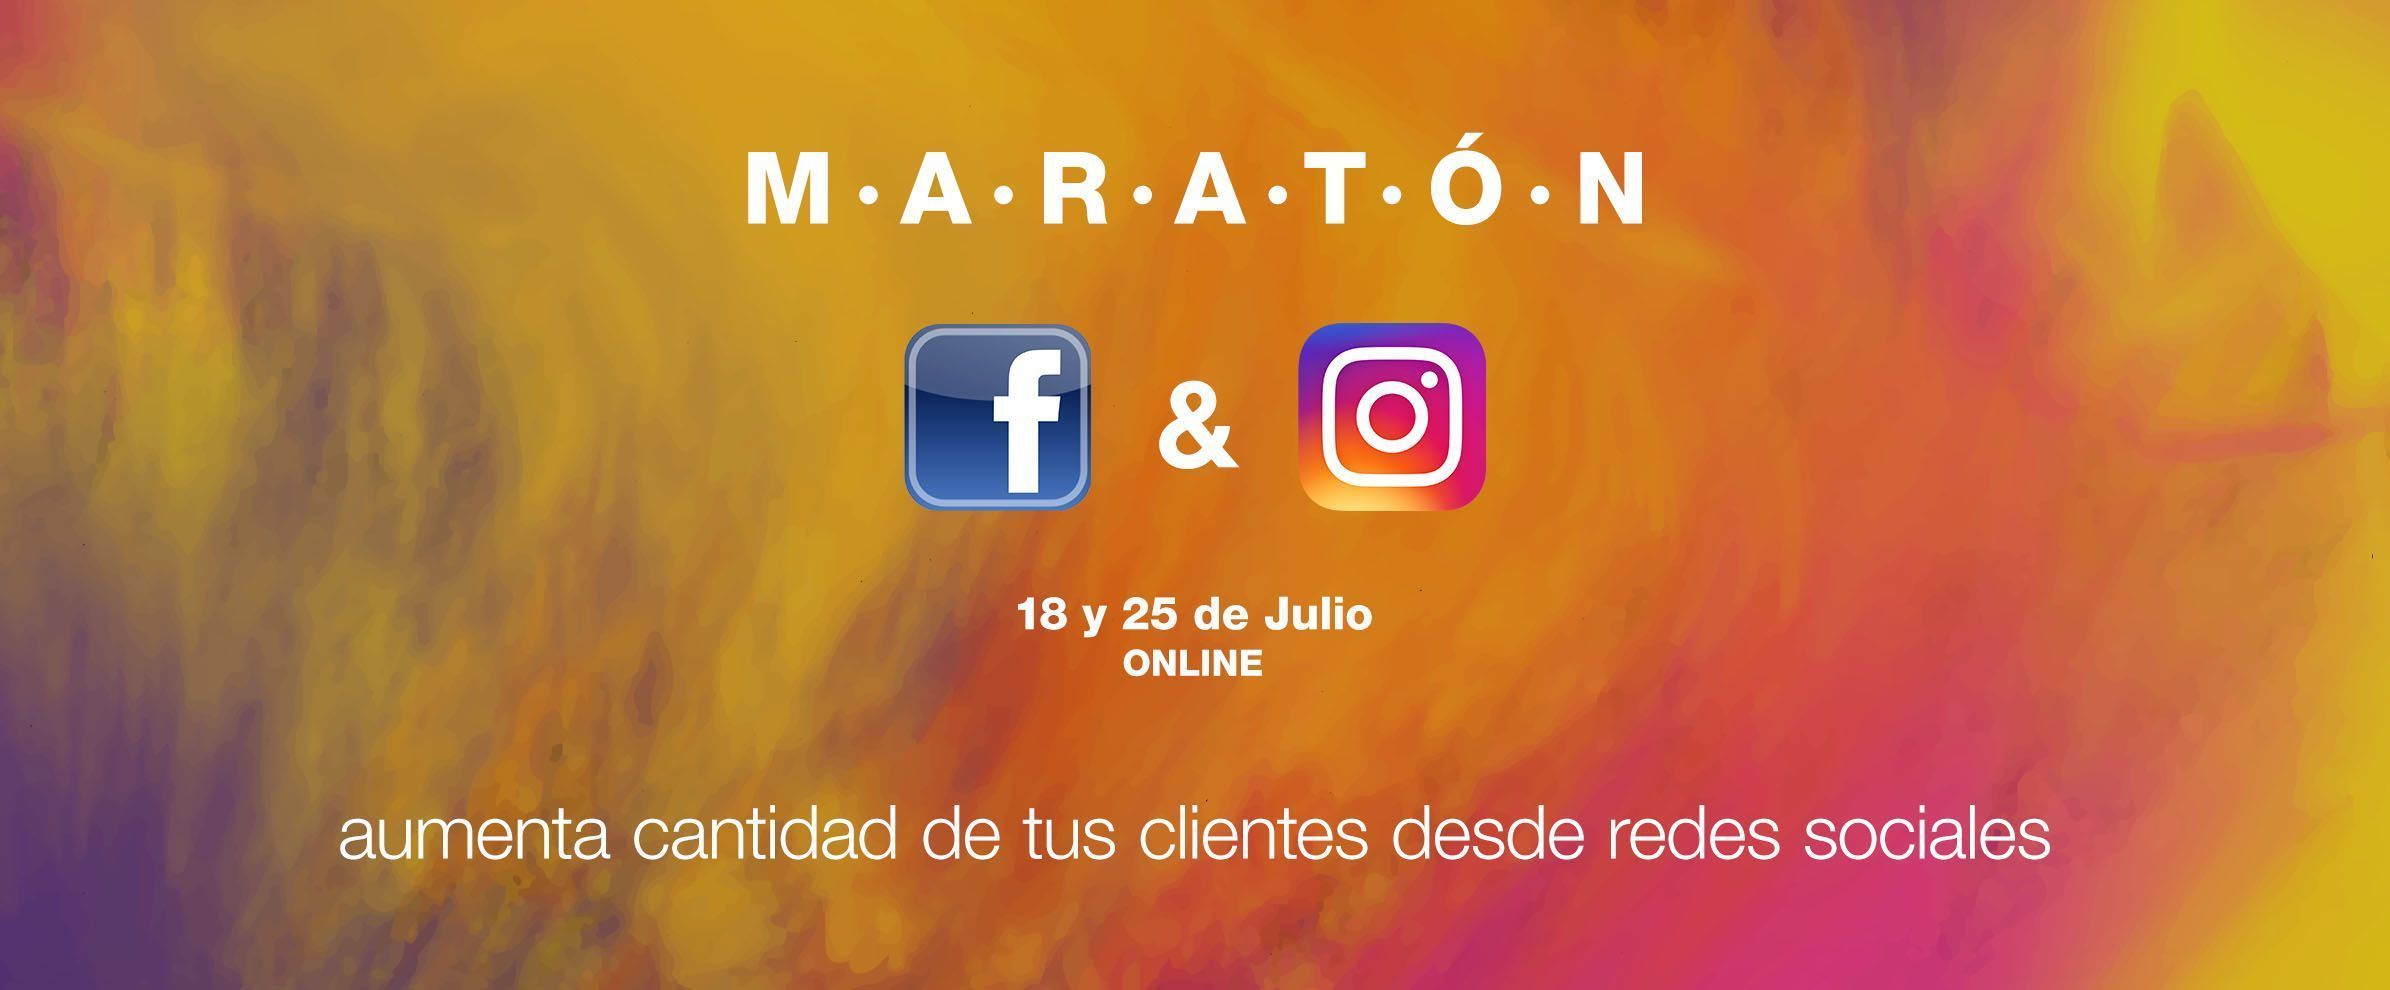 Maraton en Redes Sociales